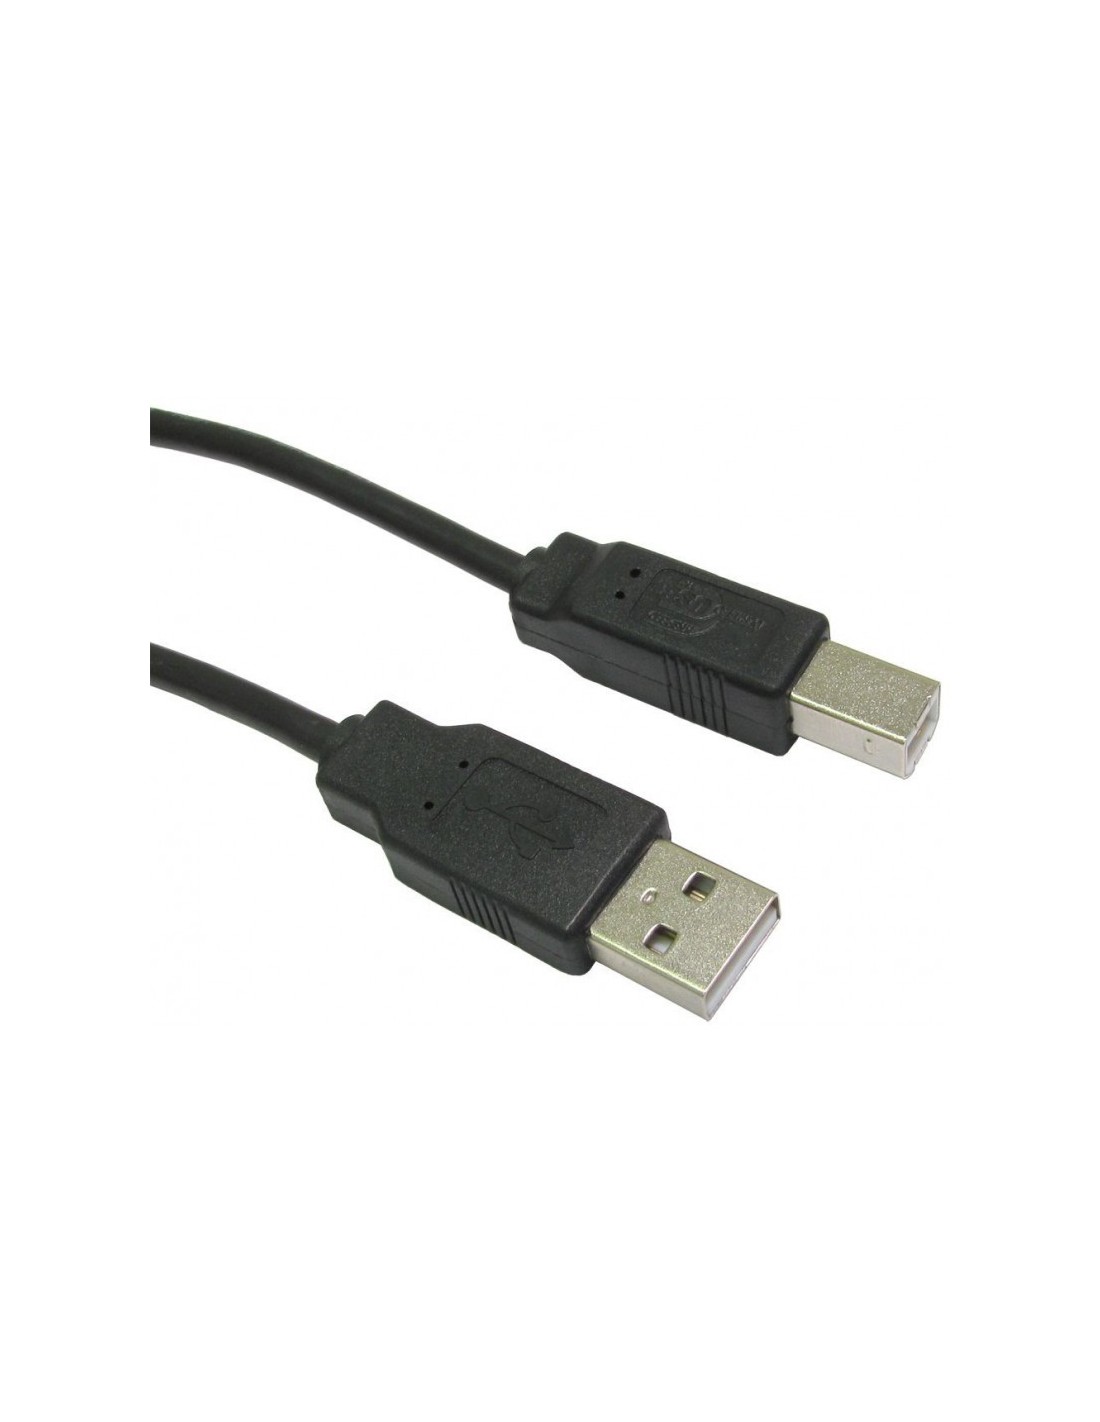 CÂBLE IMPRIMANTE USB 2.0 3M - NOIR